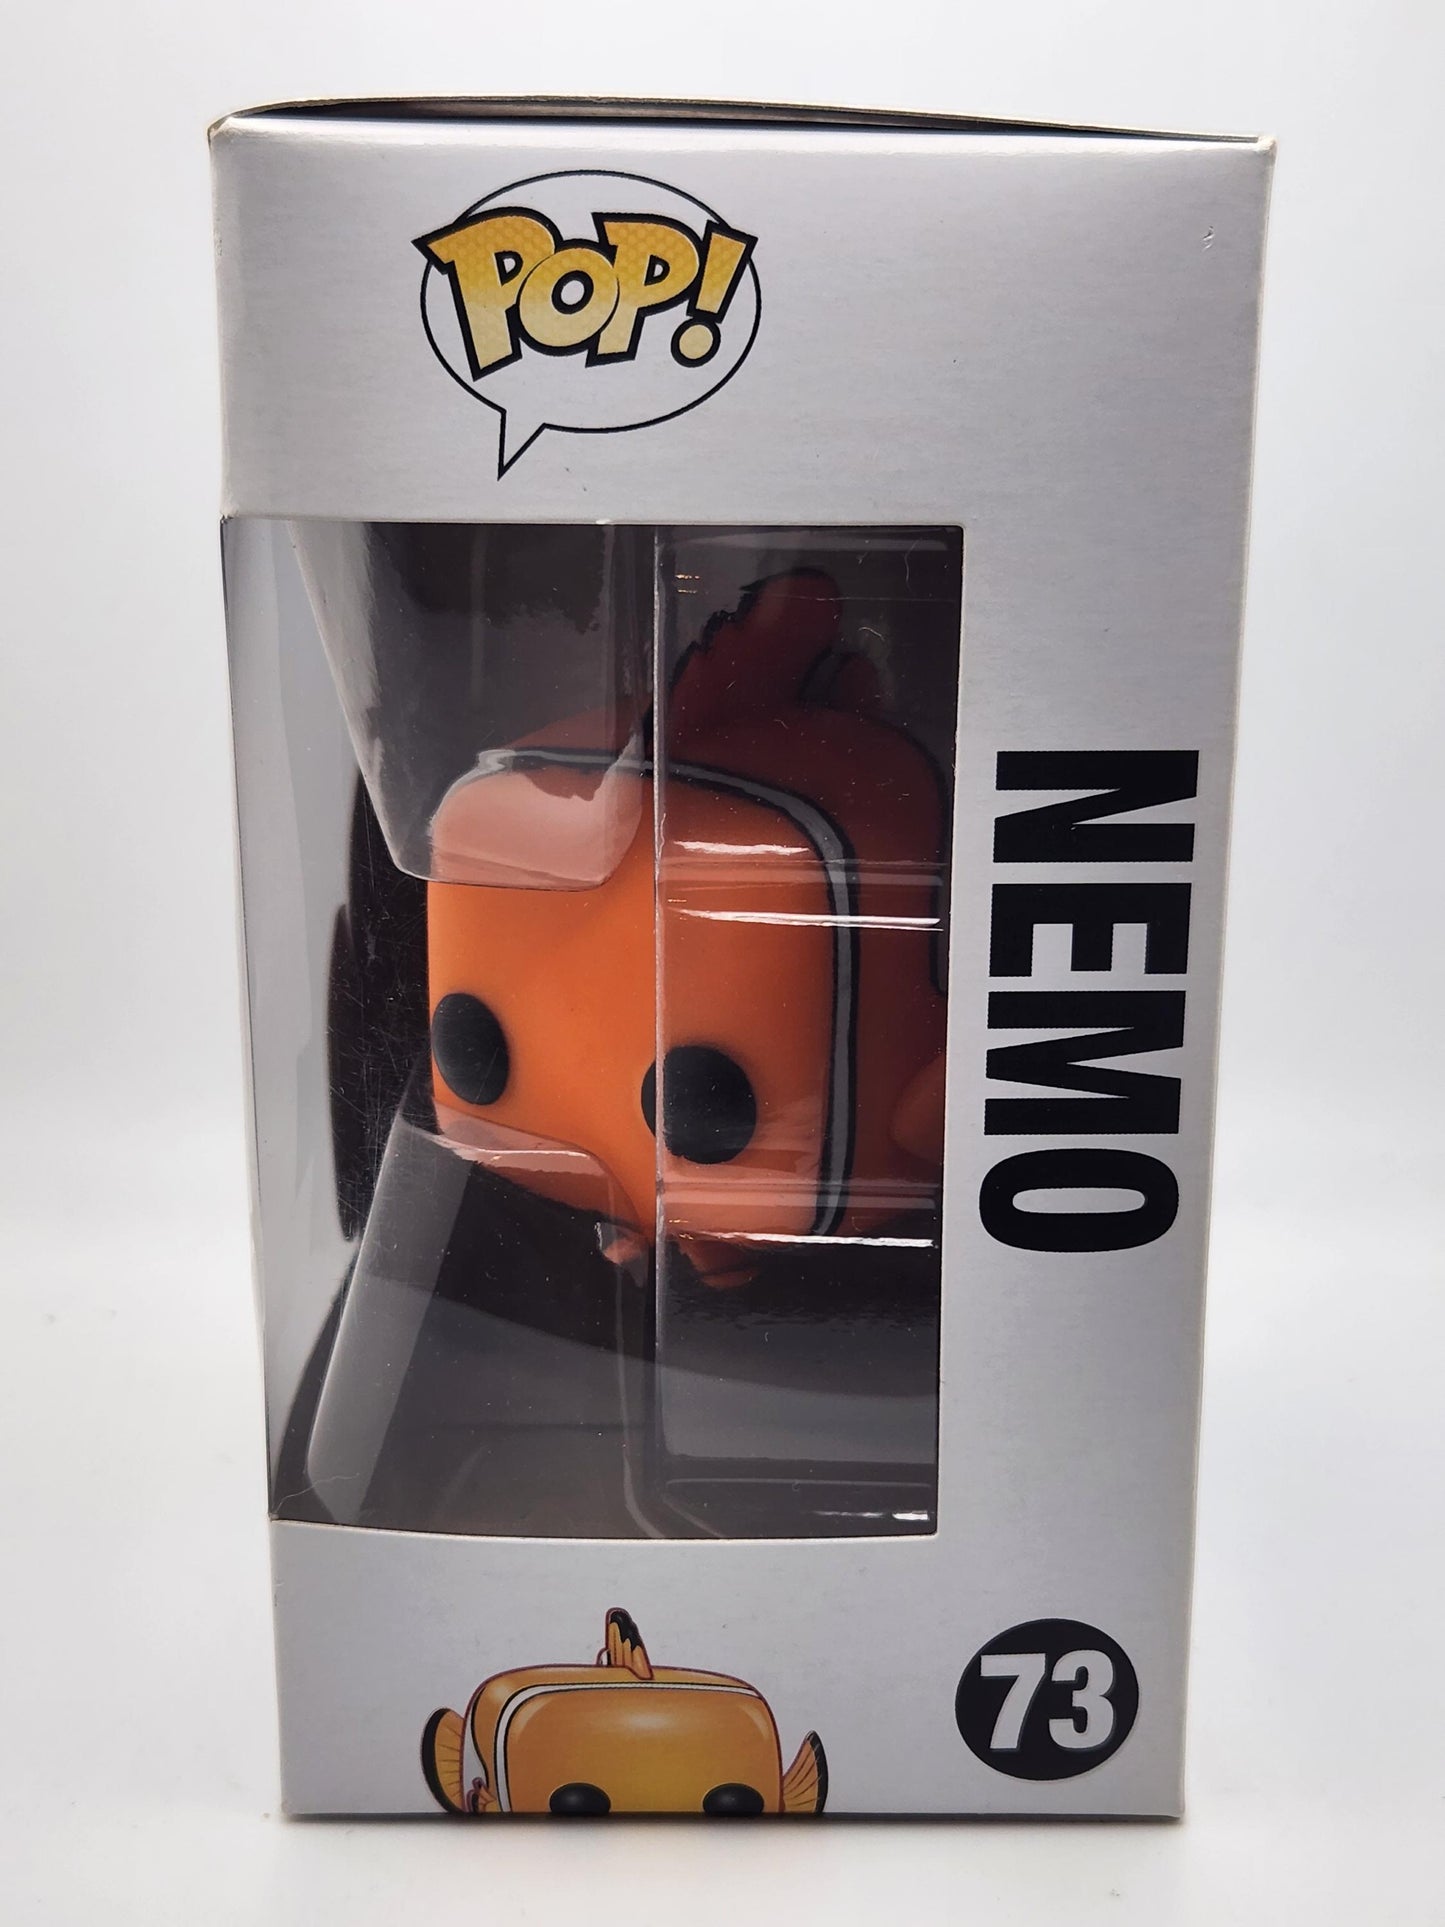 Nemo - #73 - Box Condition 8/10 -